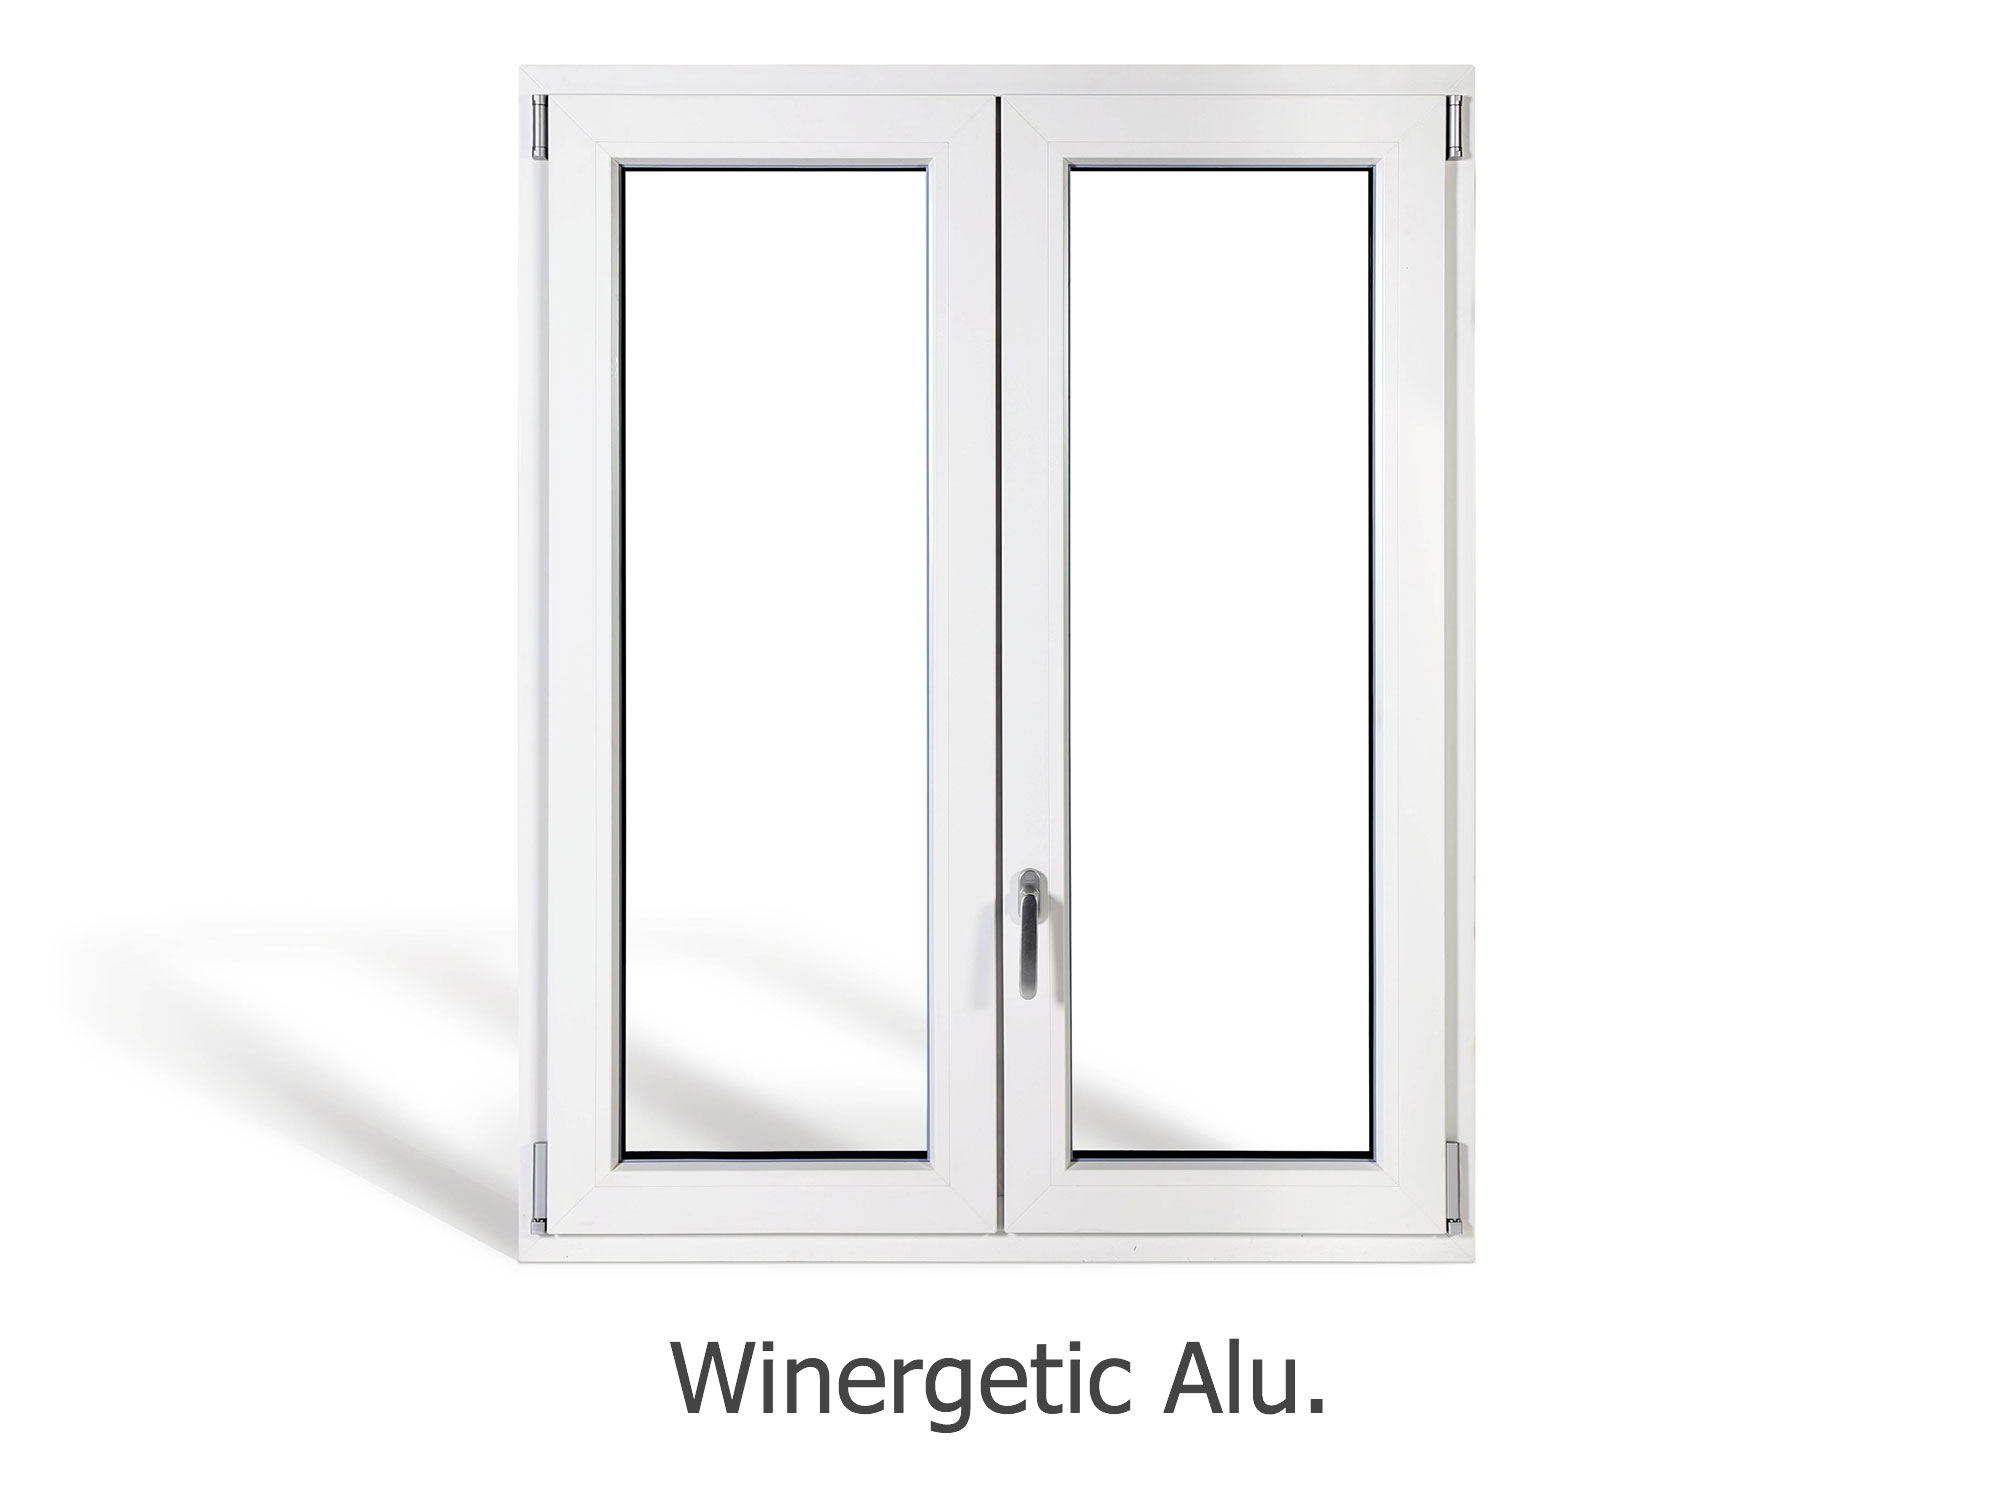 finestra-winergetic-alu96043025-90b9-108a-4867-d452bfdfaf4dD6FCE1F2-ECEF-D389-1522-552F5241B13F